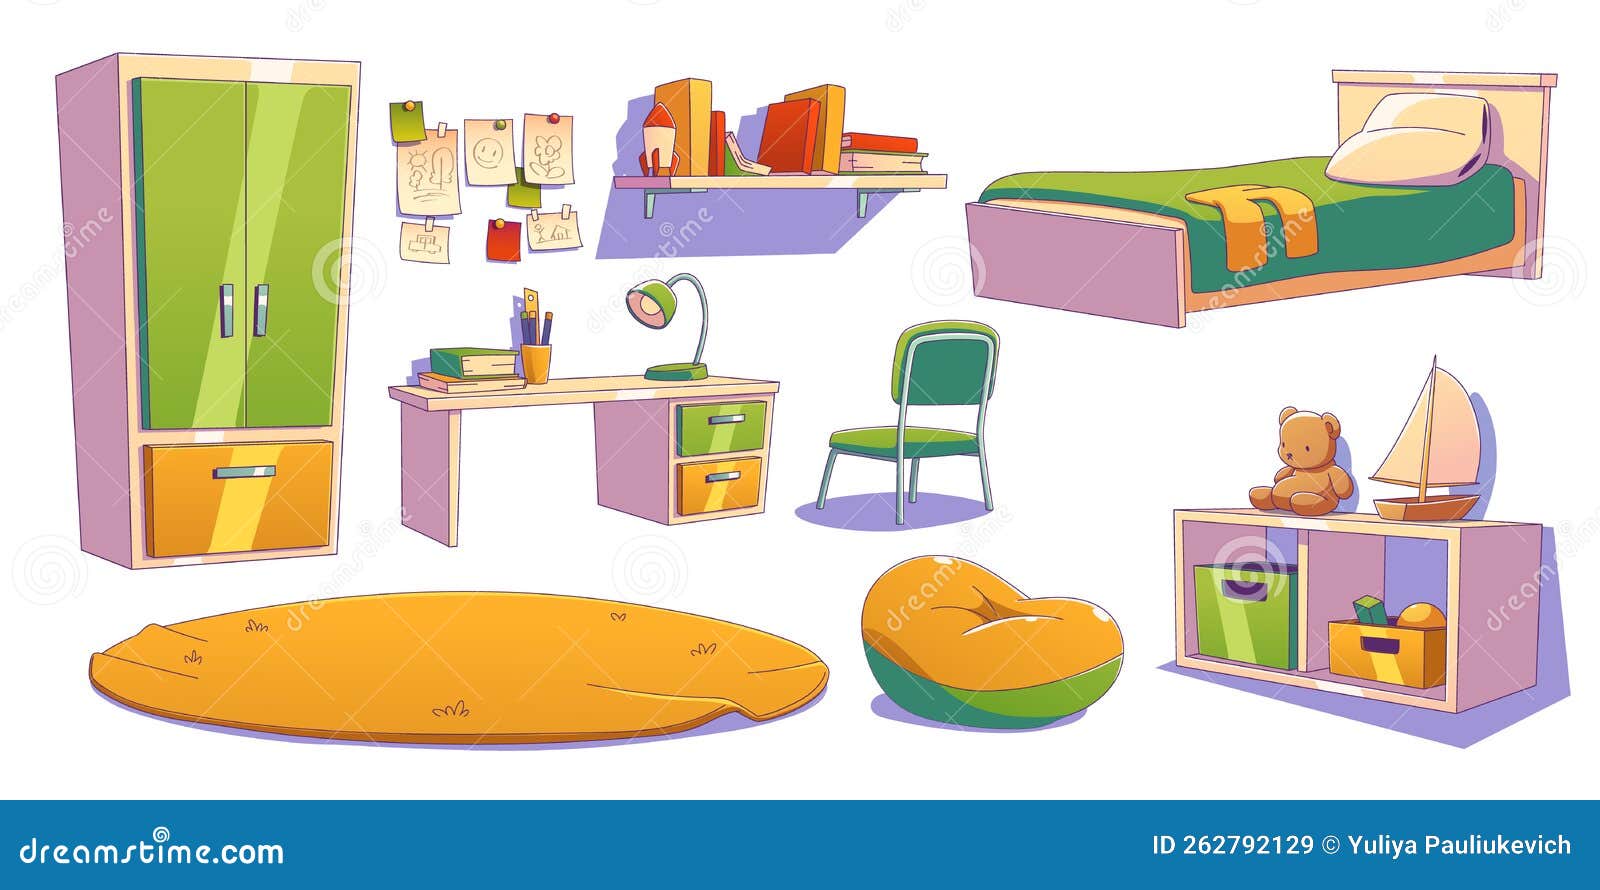 Ilustração em vetor plana interior quarto jardim de infância. sala